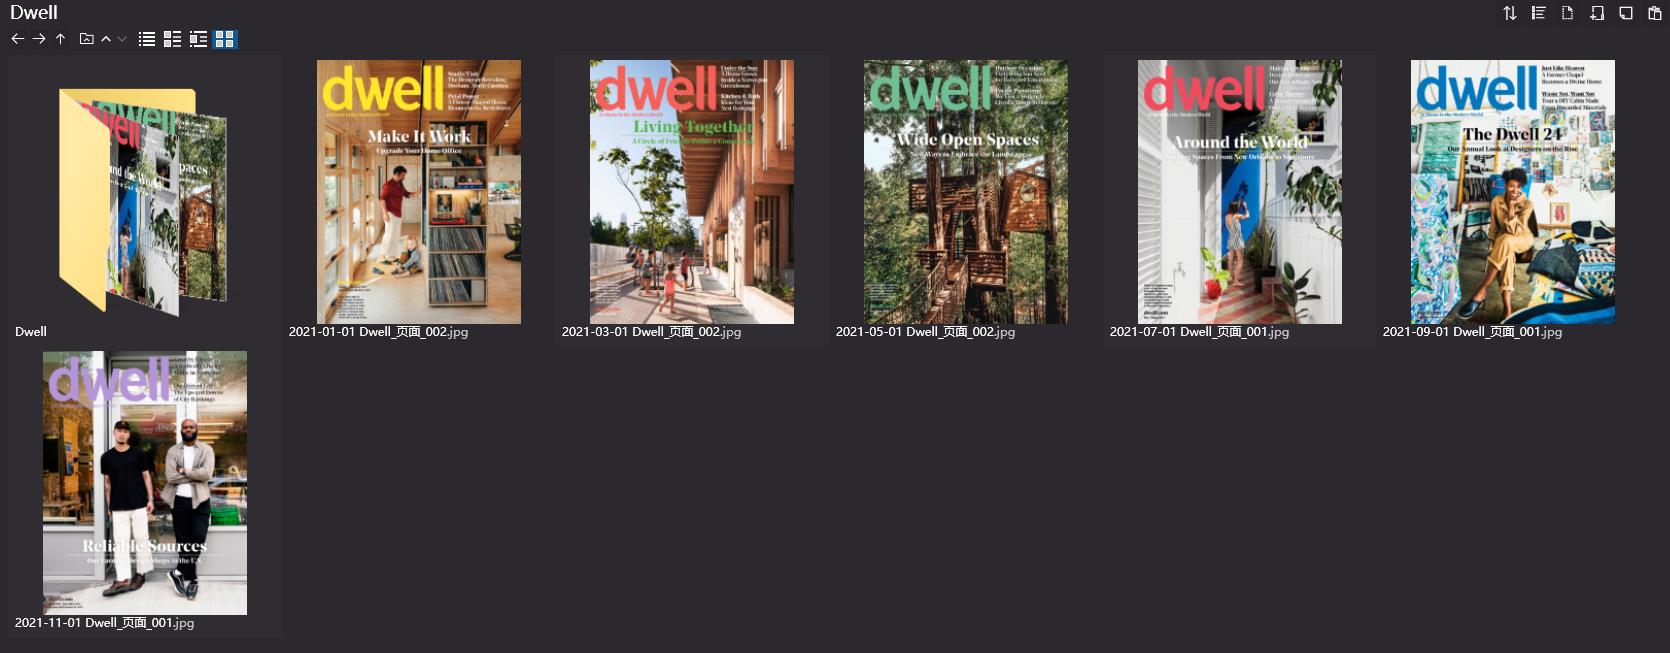 室内、软装设计杂志Dwell,建筑、设计杂志Dwell,室内设计杂志,软装设计杂志,Dwell设计电子杂志,杂志下载,Dwell杂志合集